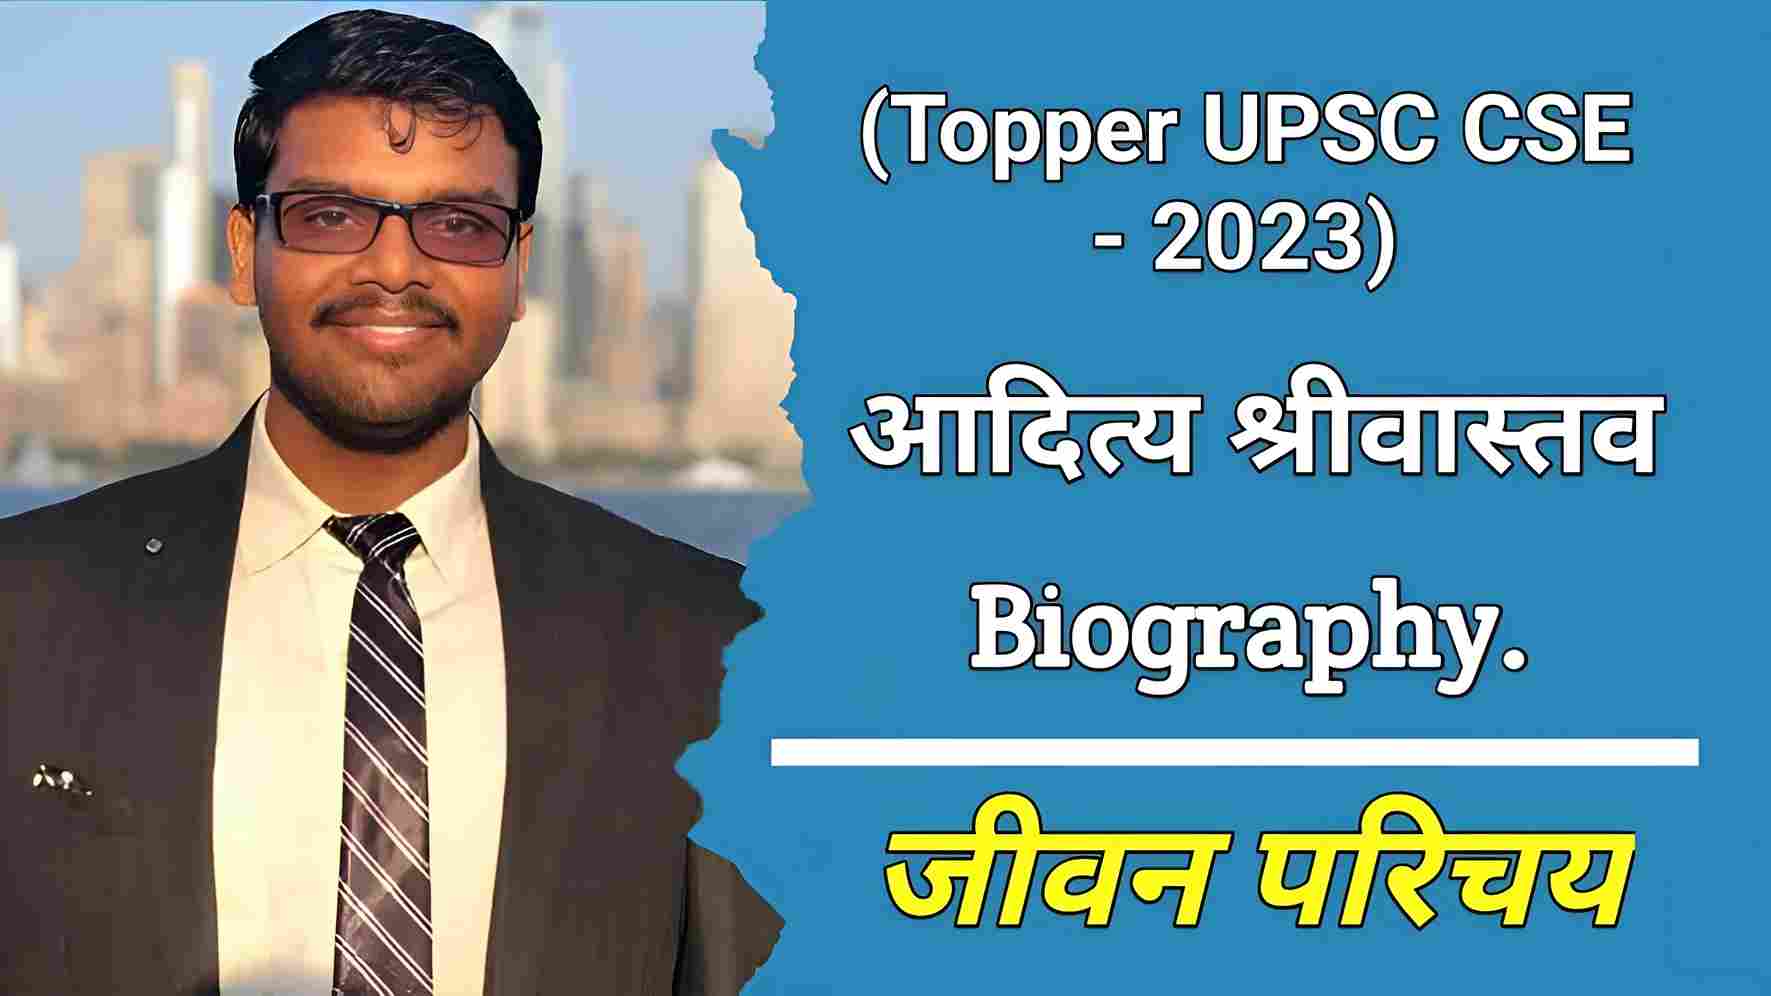 आदित्य श्रीवास्तव (यूपीएससी टॉपर 2023) का जीवन परिचय | Aditya Srivastava (UPSC Topper 2023) Biography In Hindi